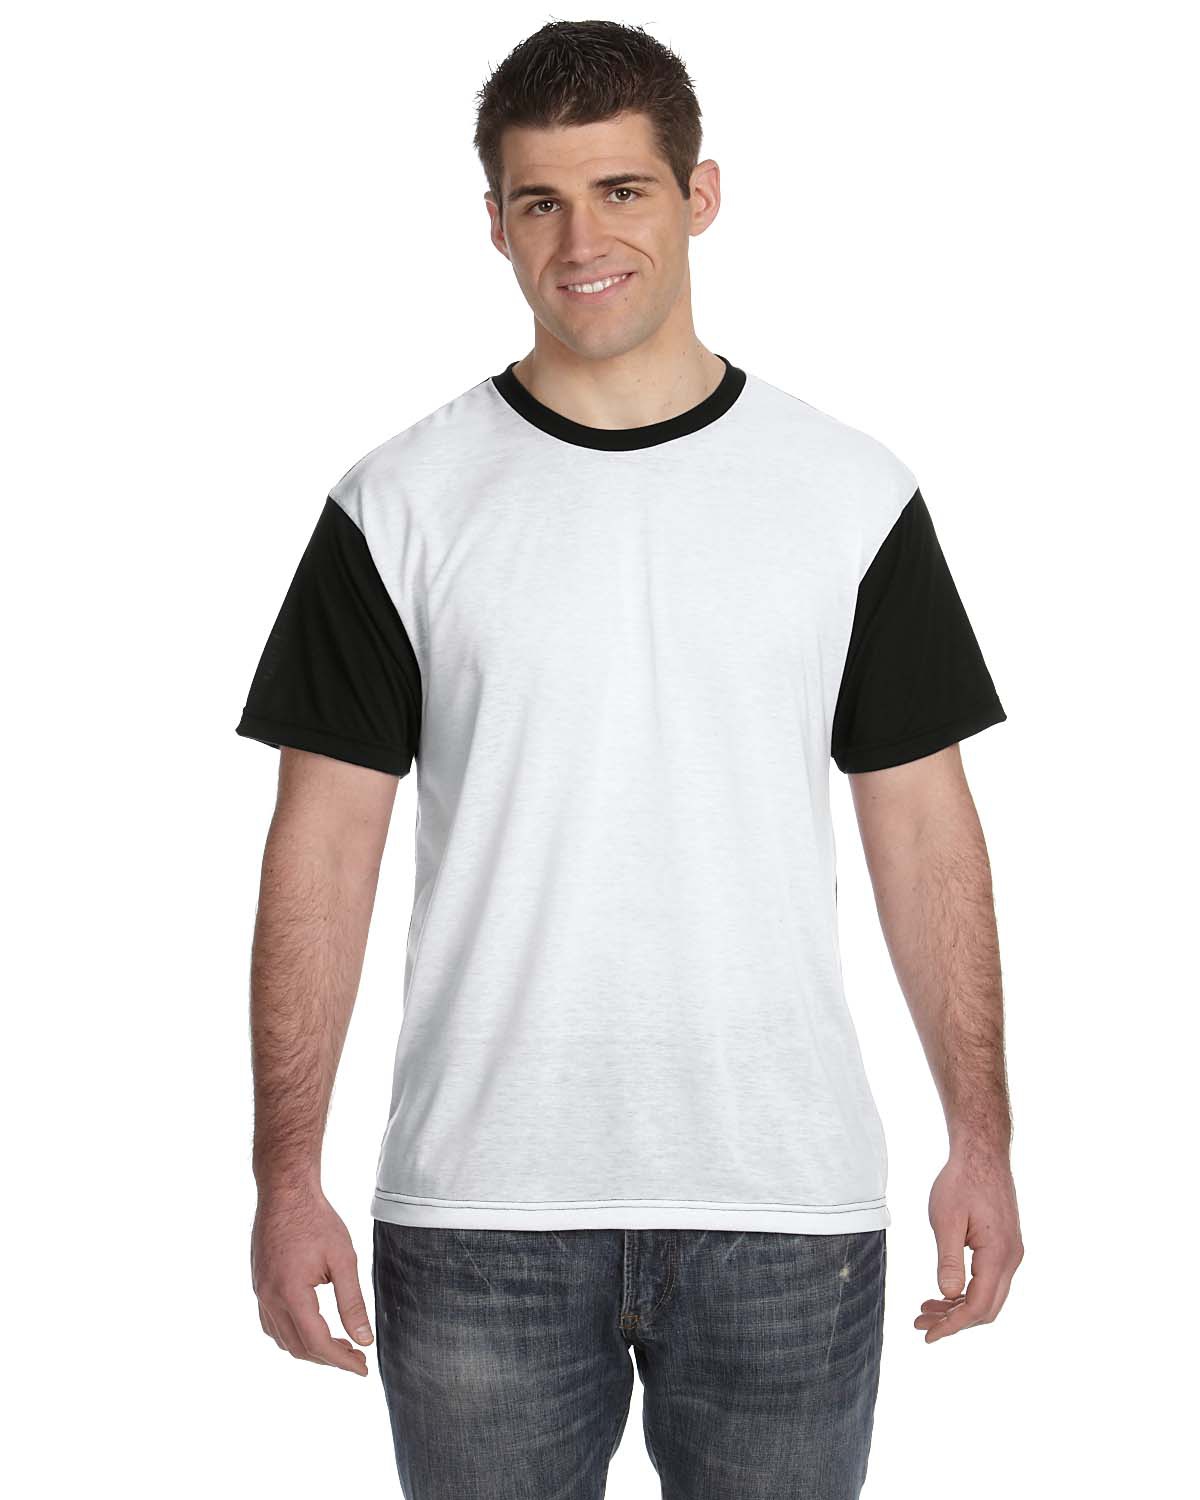 'Sublivie S1902 Men's Blackout Sublimation Polyester T-Shirt'